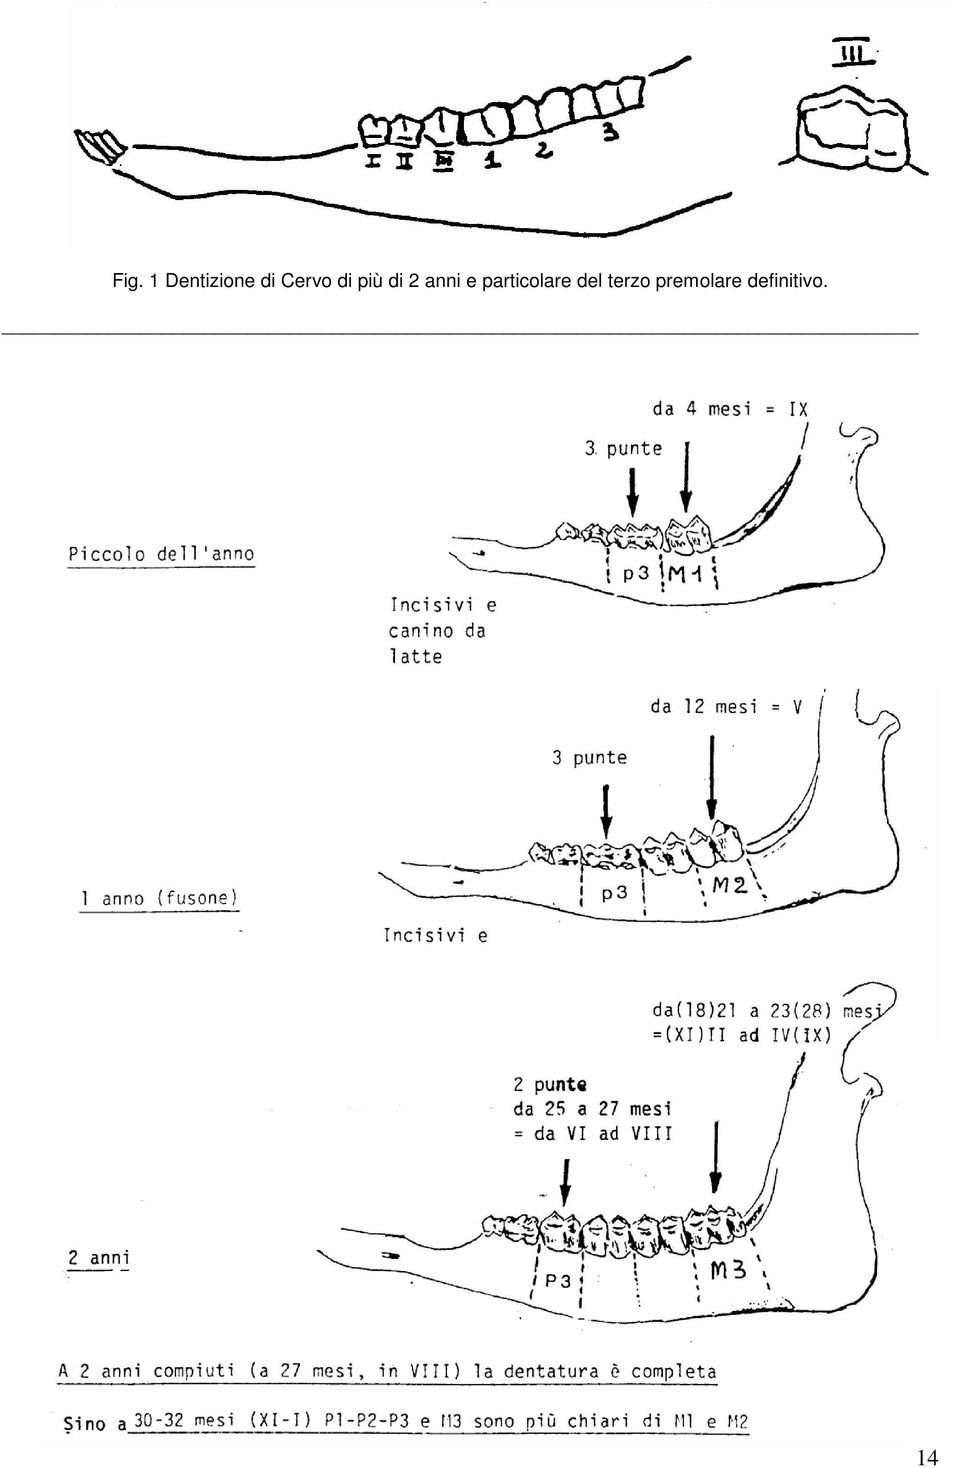 Fig. 1 Dentizione di Cervo di più di 2 anni